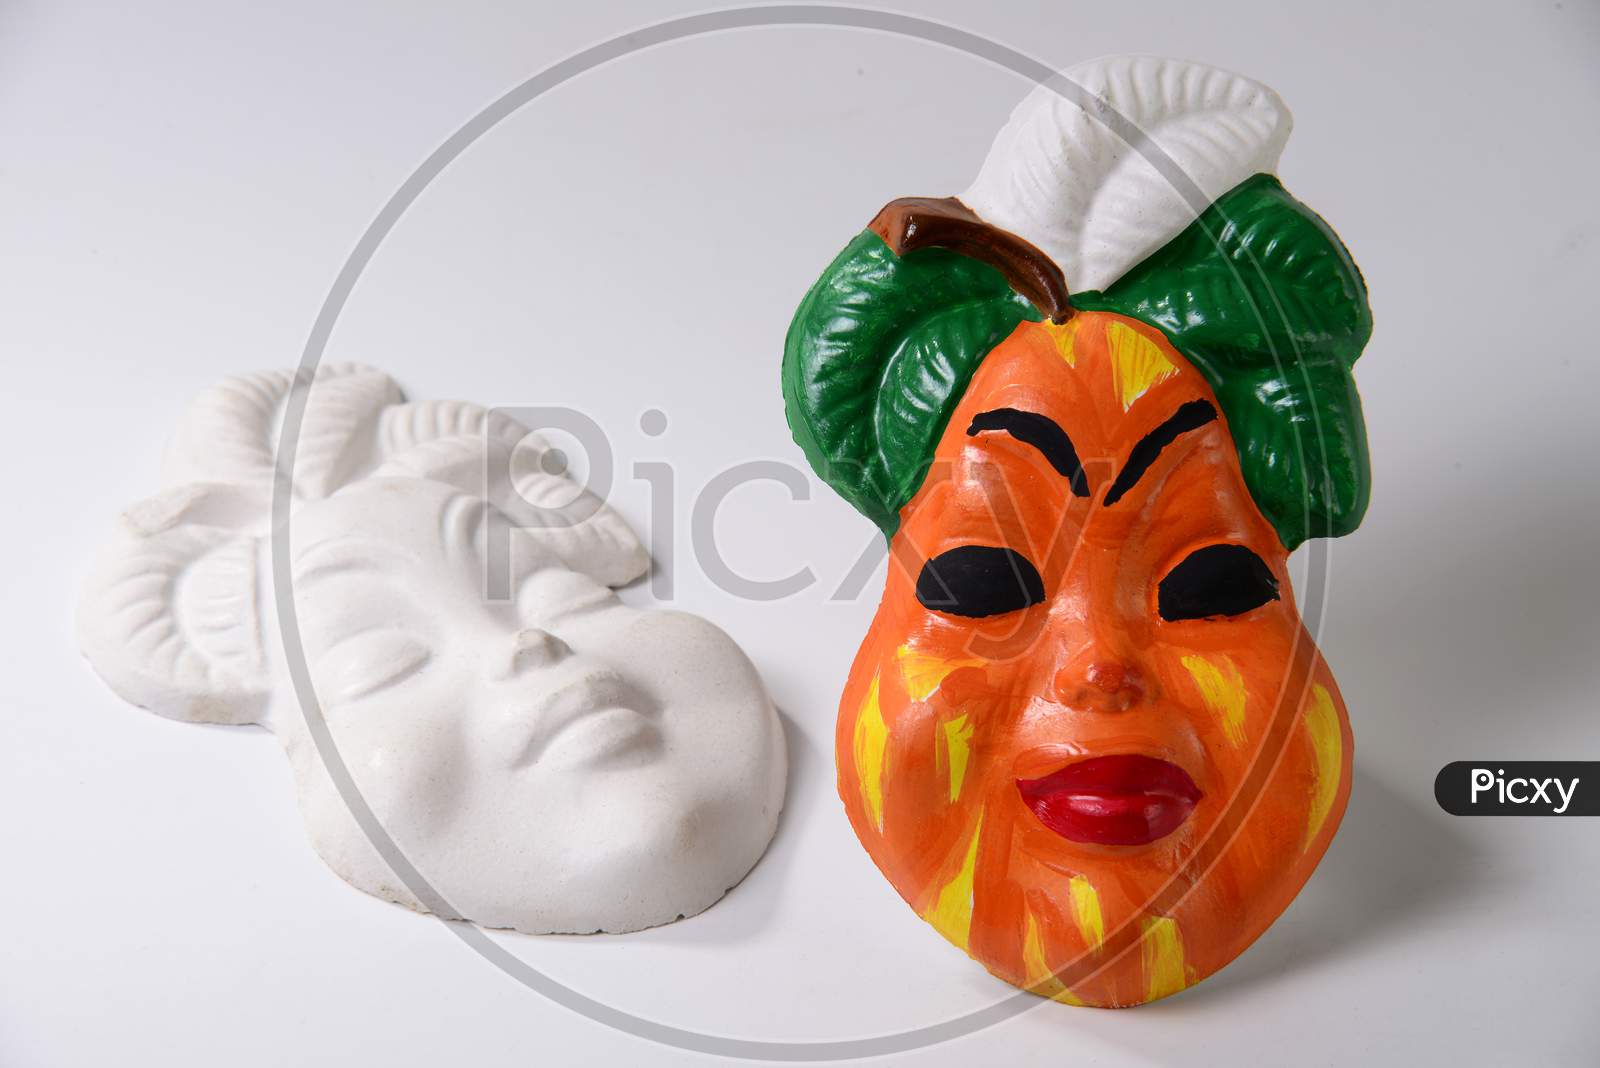 Decorative fruit specimen with a face